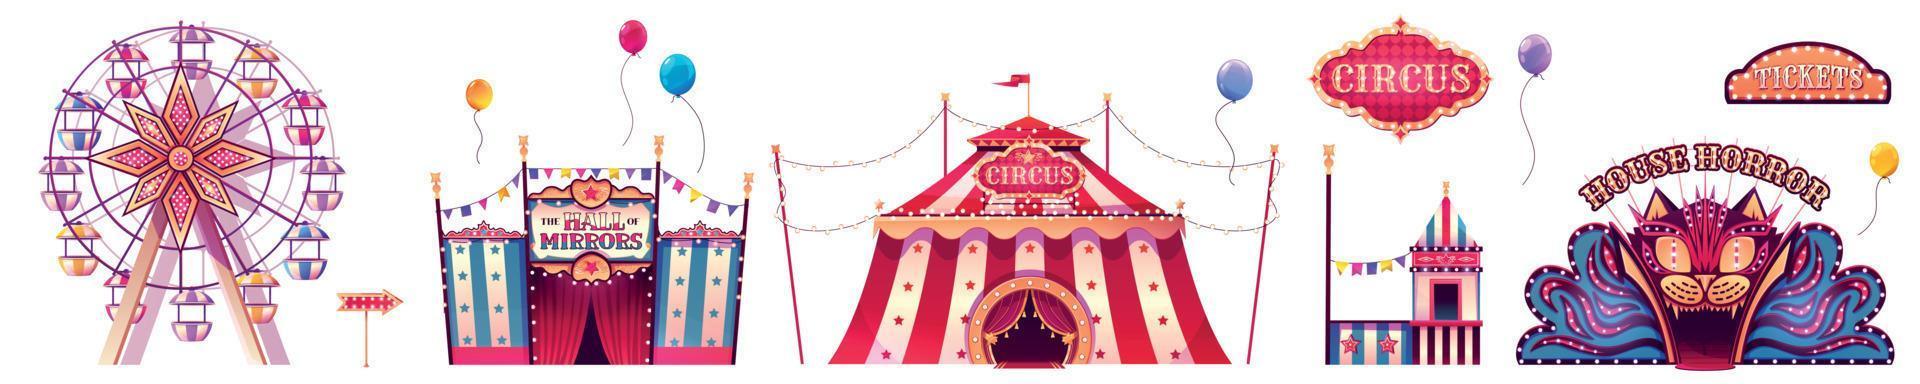 parque de atracciones con carpa de circo, noria vector